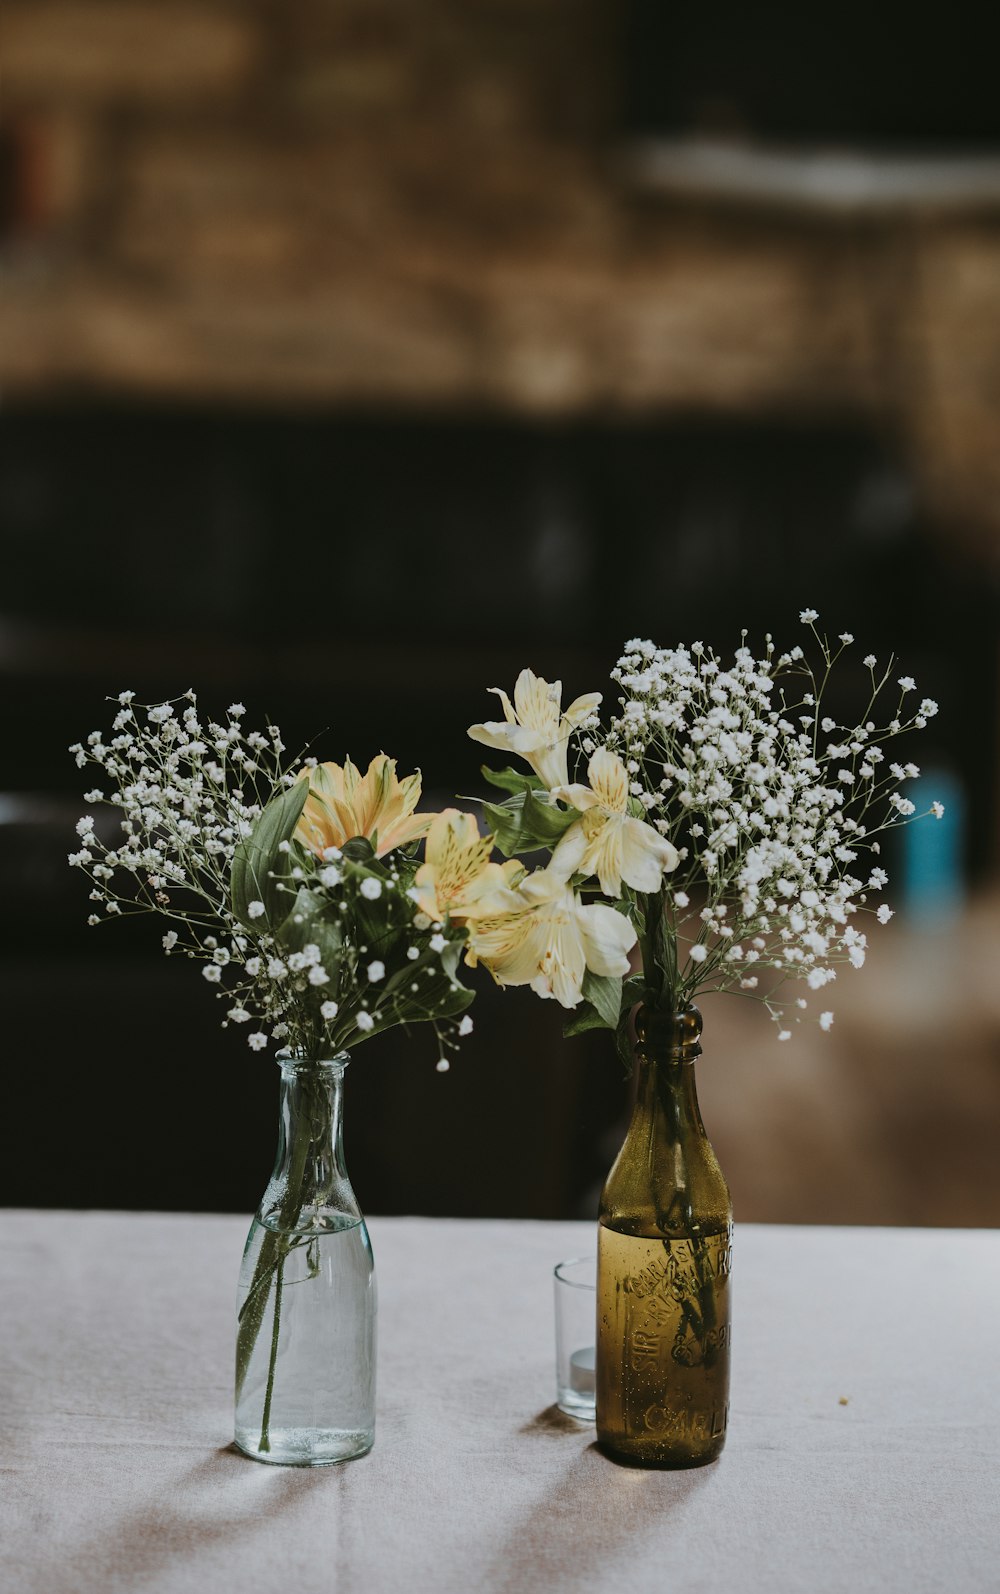 透明なガラス瓶に白と黄色の花